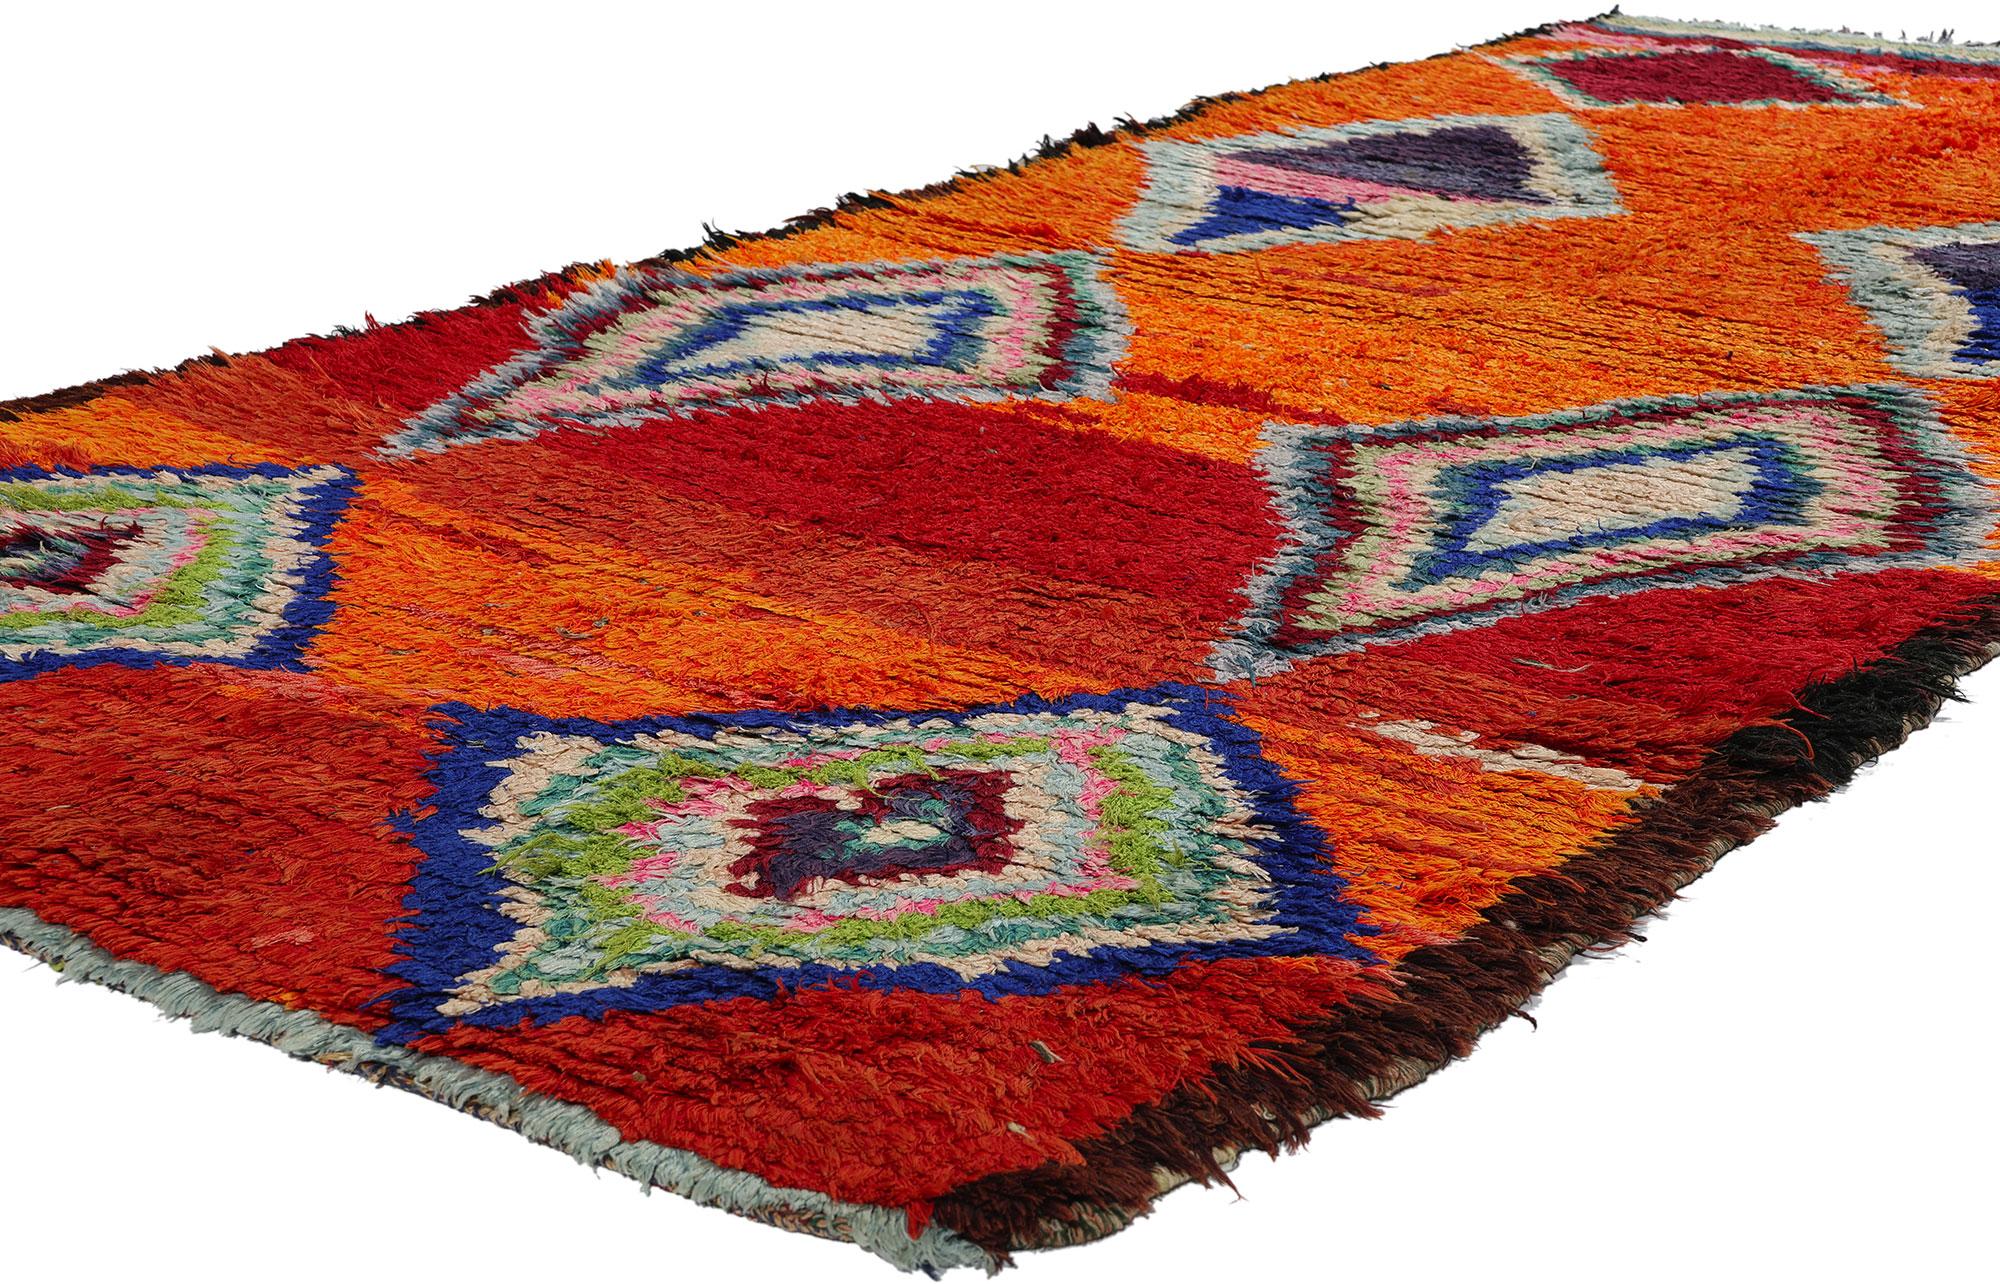 21830 Tapis marocain Vintage Orange Boujad, 04'00 x 08'05. Un tapis Boujad est un tapis tissé à la main originaire de la région de Boujad, dans le Moyen Atlas marocain. Traditionnellement fabriqués par les tribus berbères, en particulier les tribus